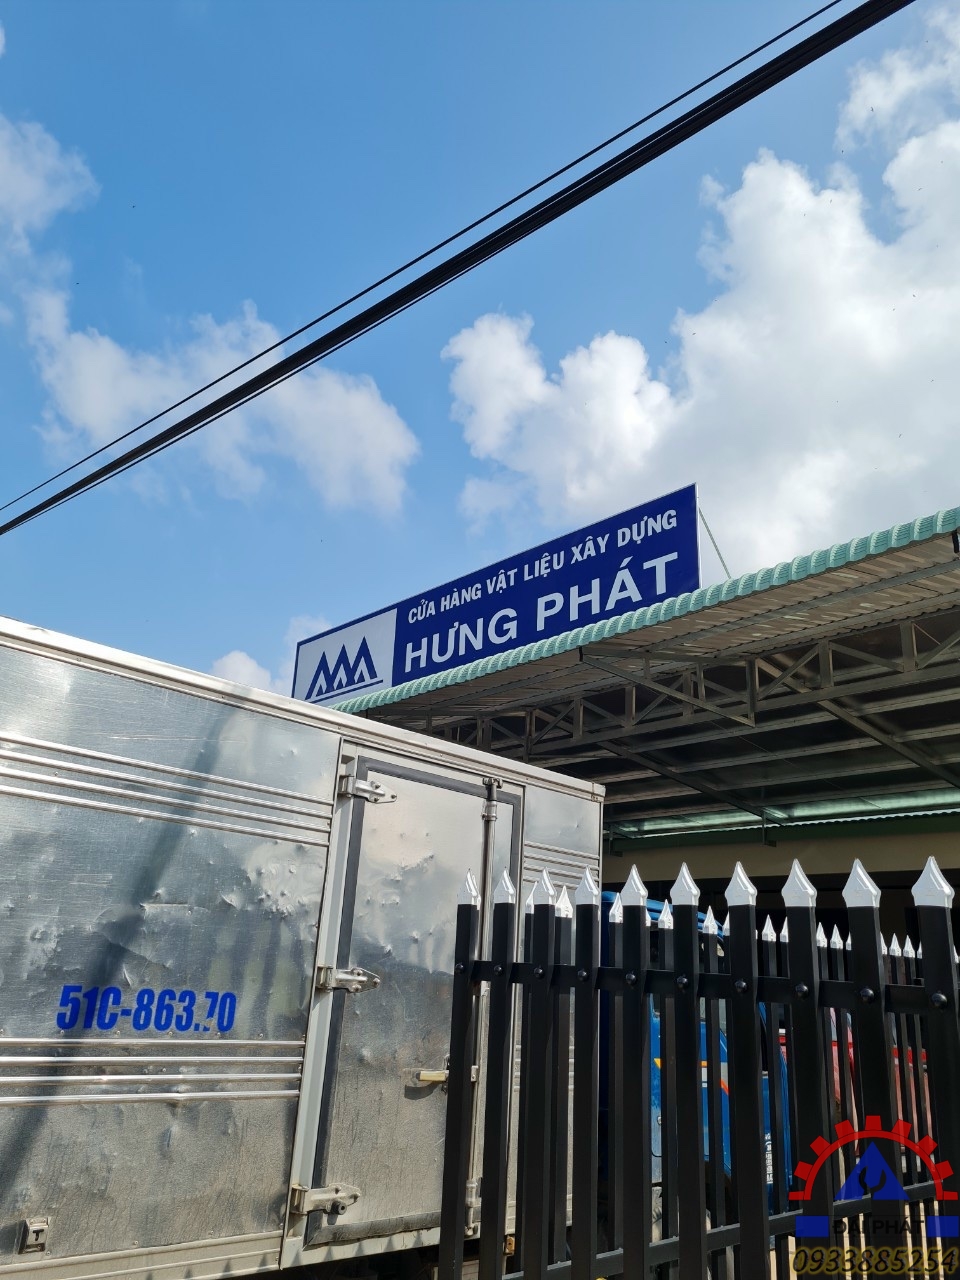  27/12: Giao máy bẻ đai cho Hưng Phát ở Gò Dầu - Tây Ninh